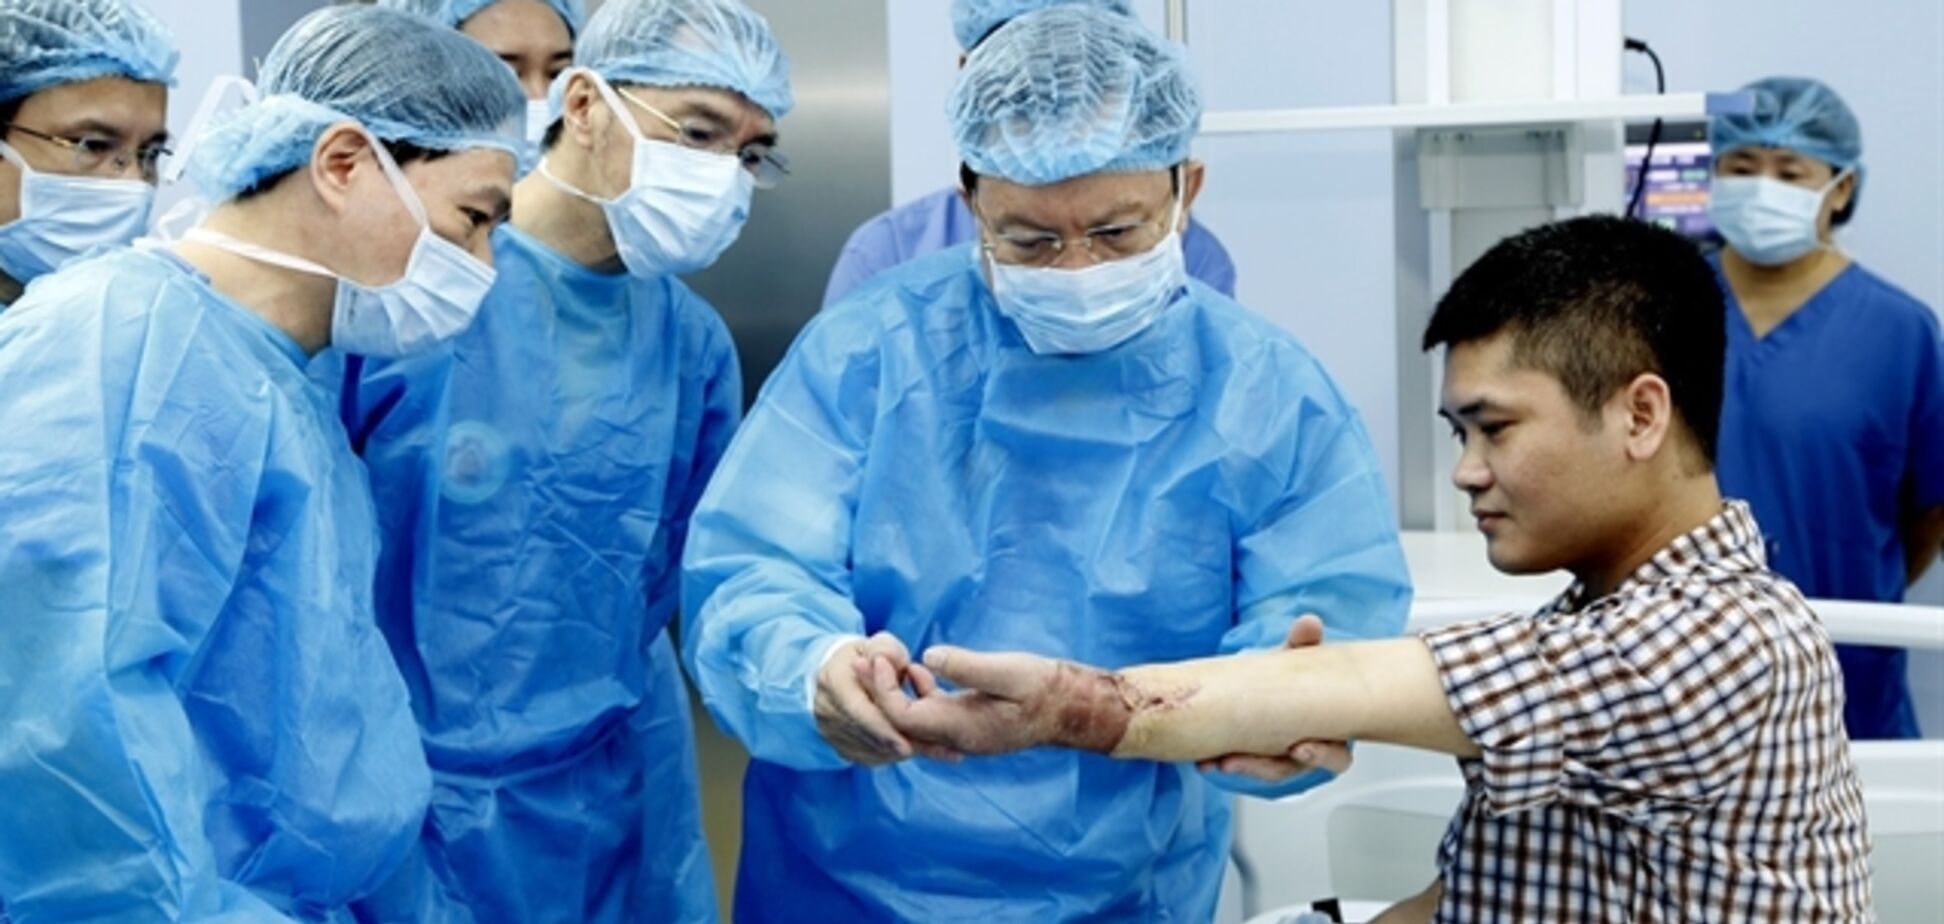 Медики впервые в истории пересадили человеку руку от живого донора. Фото